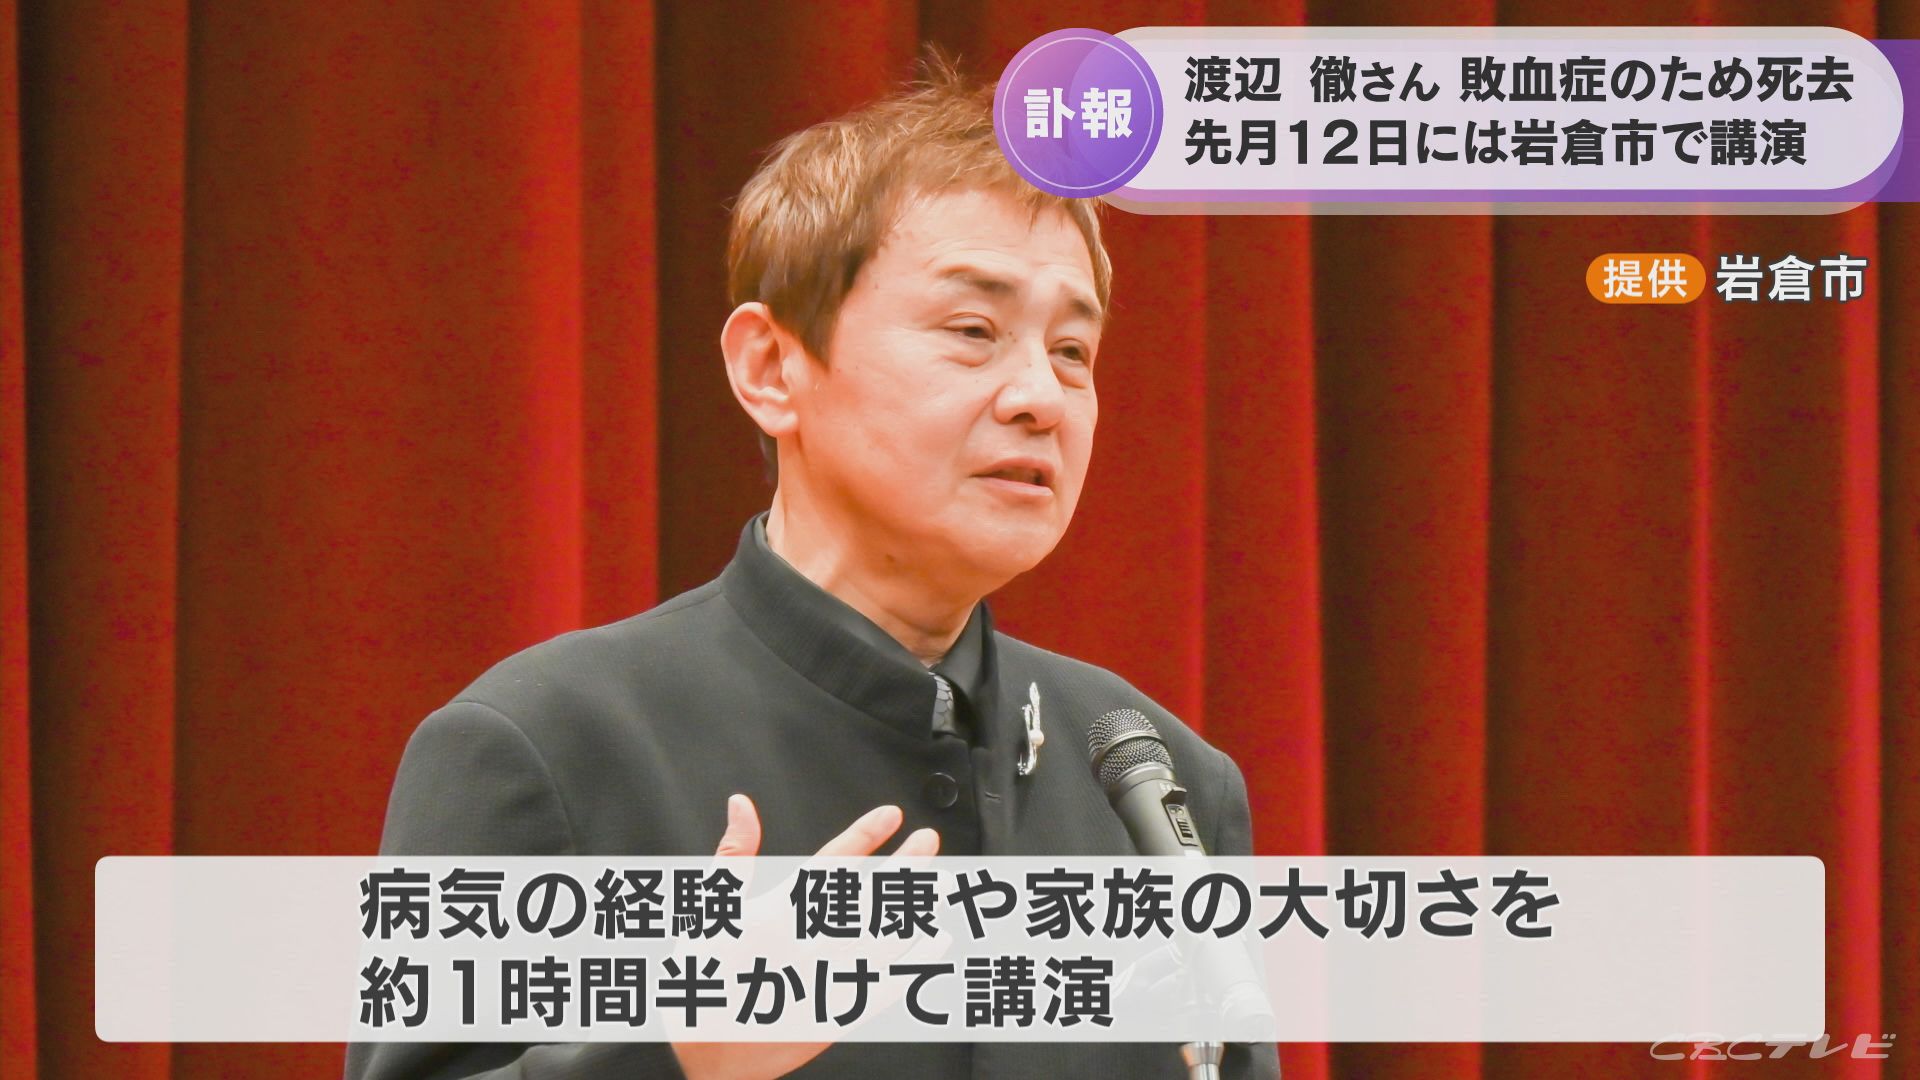 渡辺徹さん（61）敗血症で死去　亡くなる16日前に愛知・岩倉市で「健康と家族の絆」について講演していた | 東海地方のニュース【CBC news】 | CBC web